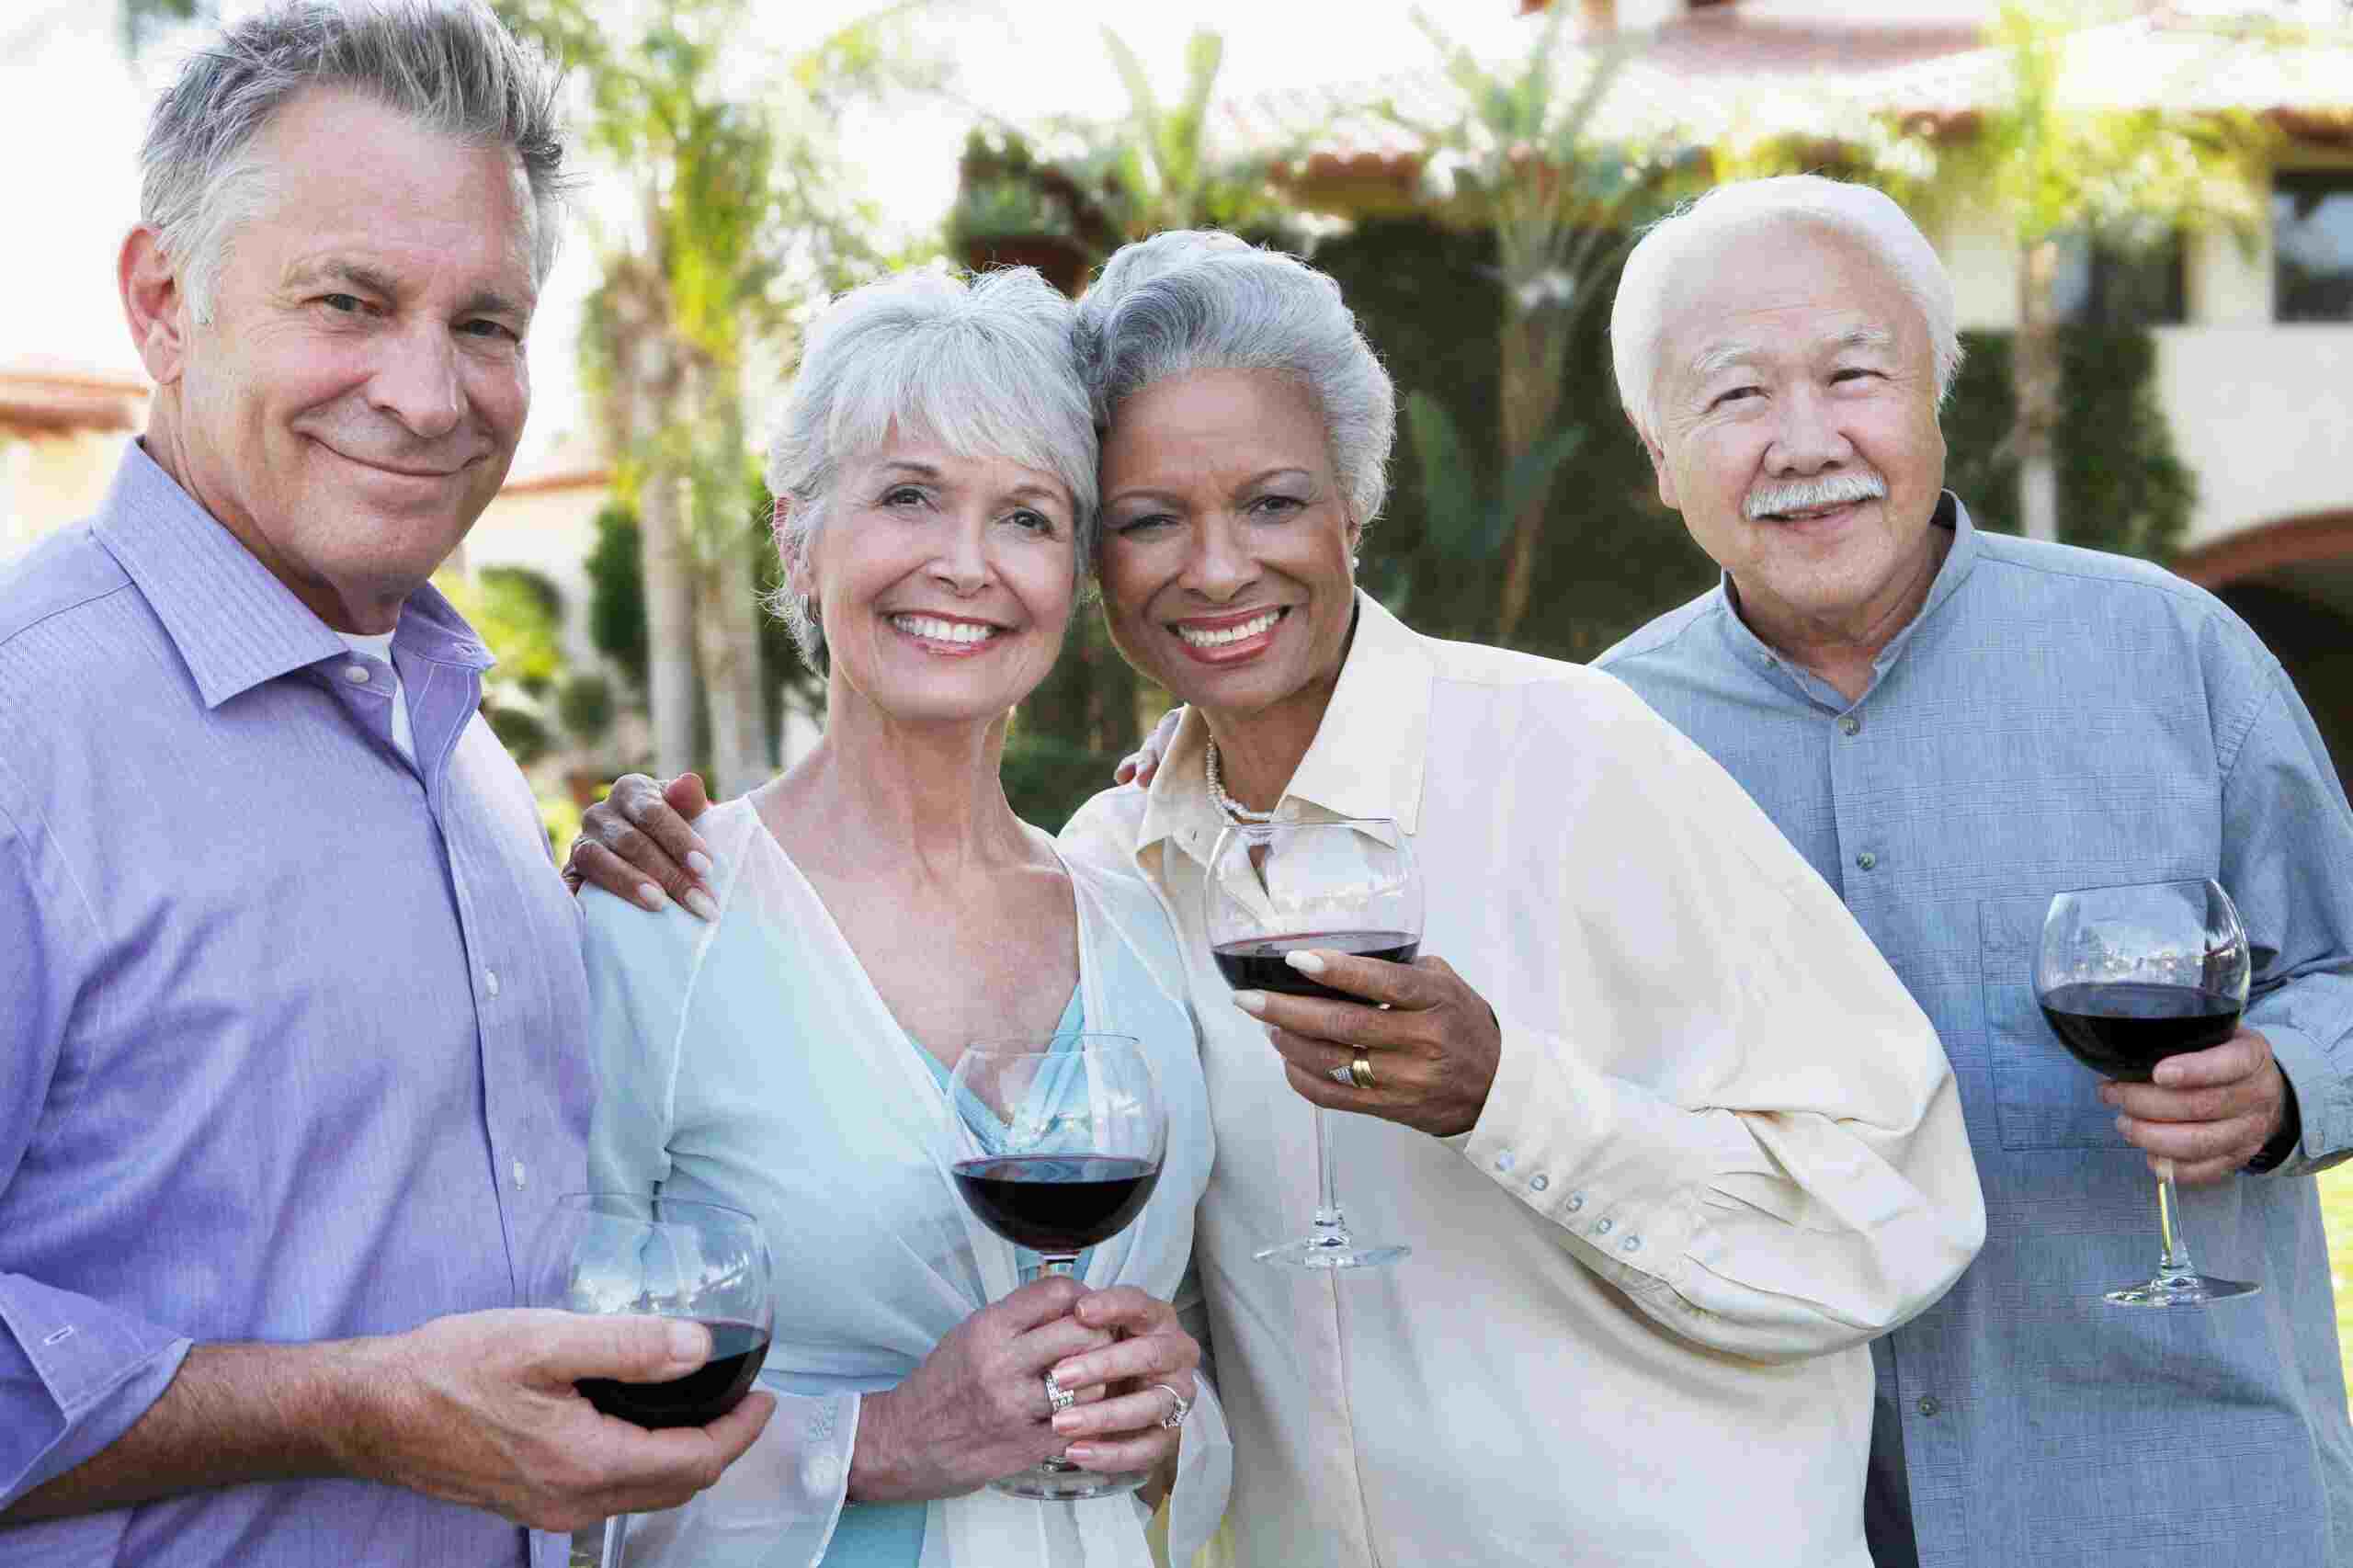 Group of seniors enjoying wine